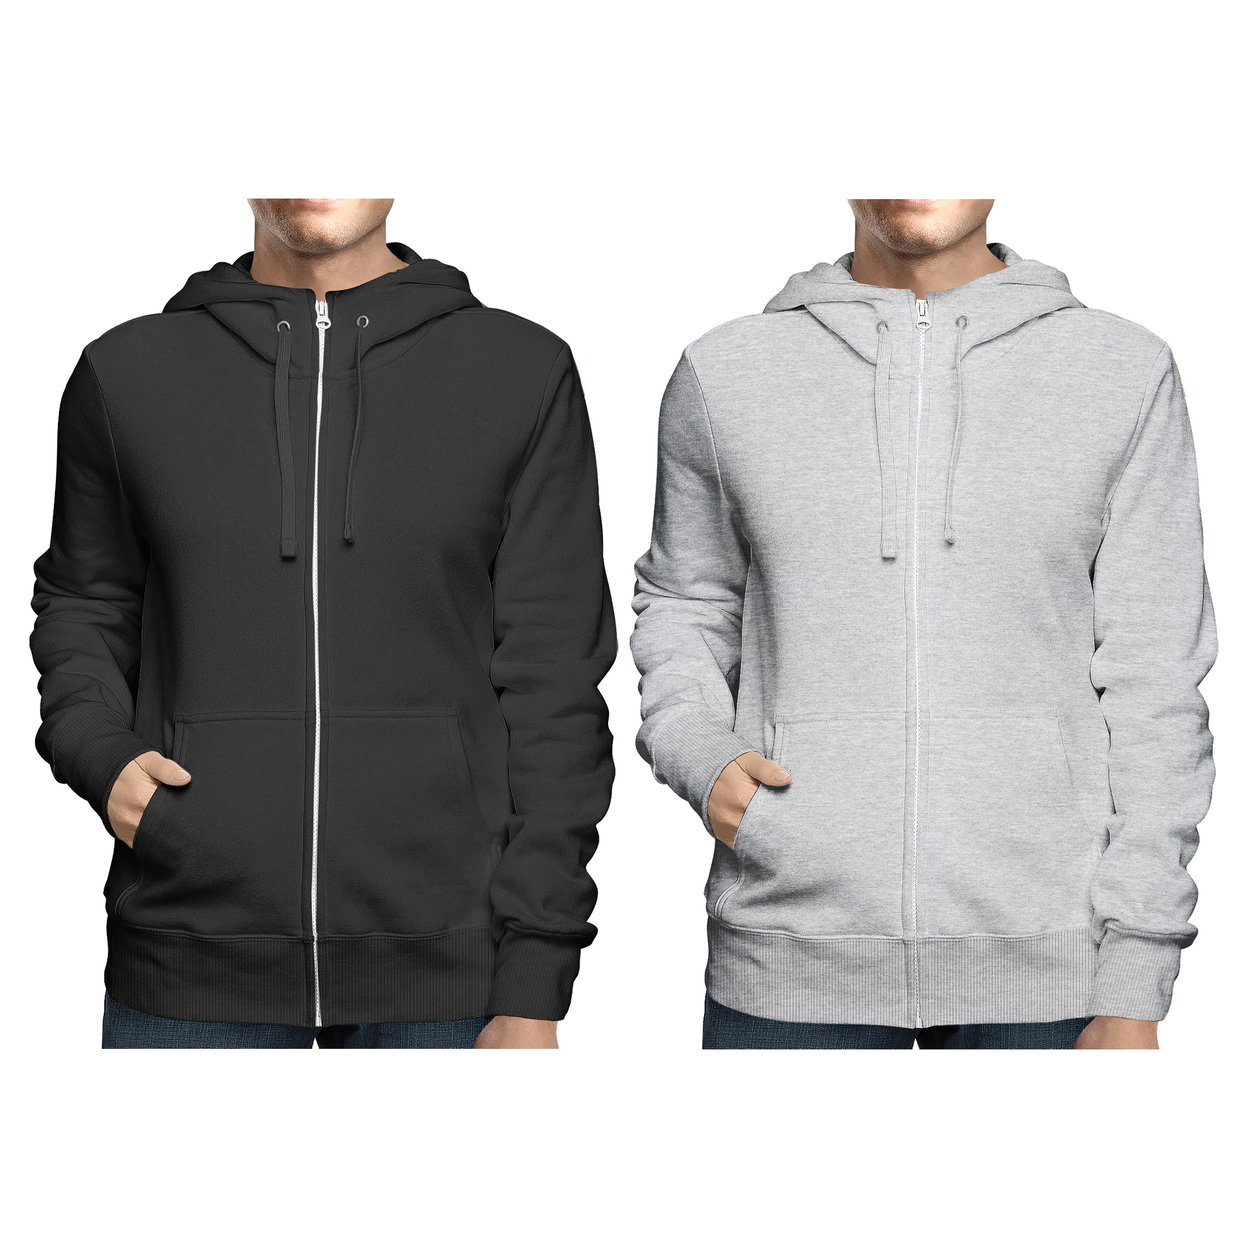 2-Pack: Men's Winter Warm Soft Full Zip-Up Fleece Lined Hoodie Sweatshirt - Black & Charcoal, Small